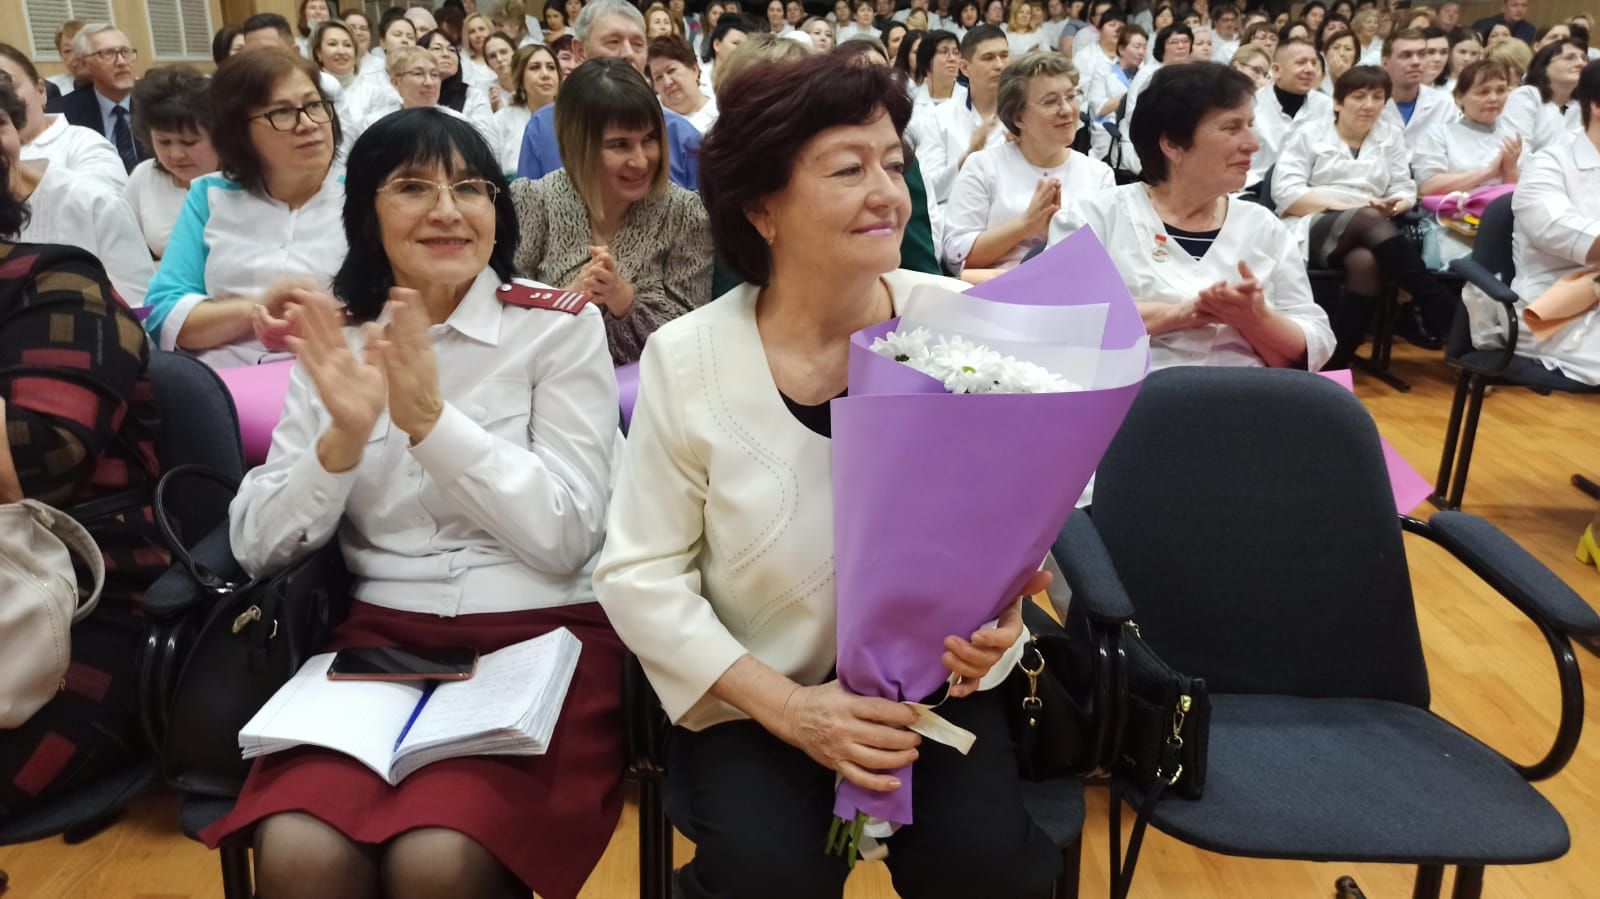 В Азнакаево состоялось итоговое совещание работников здравоохранения